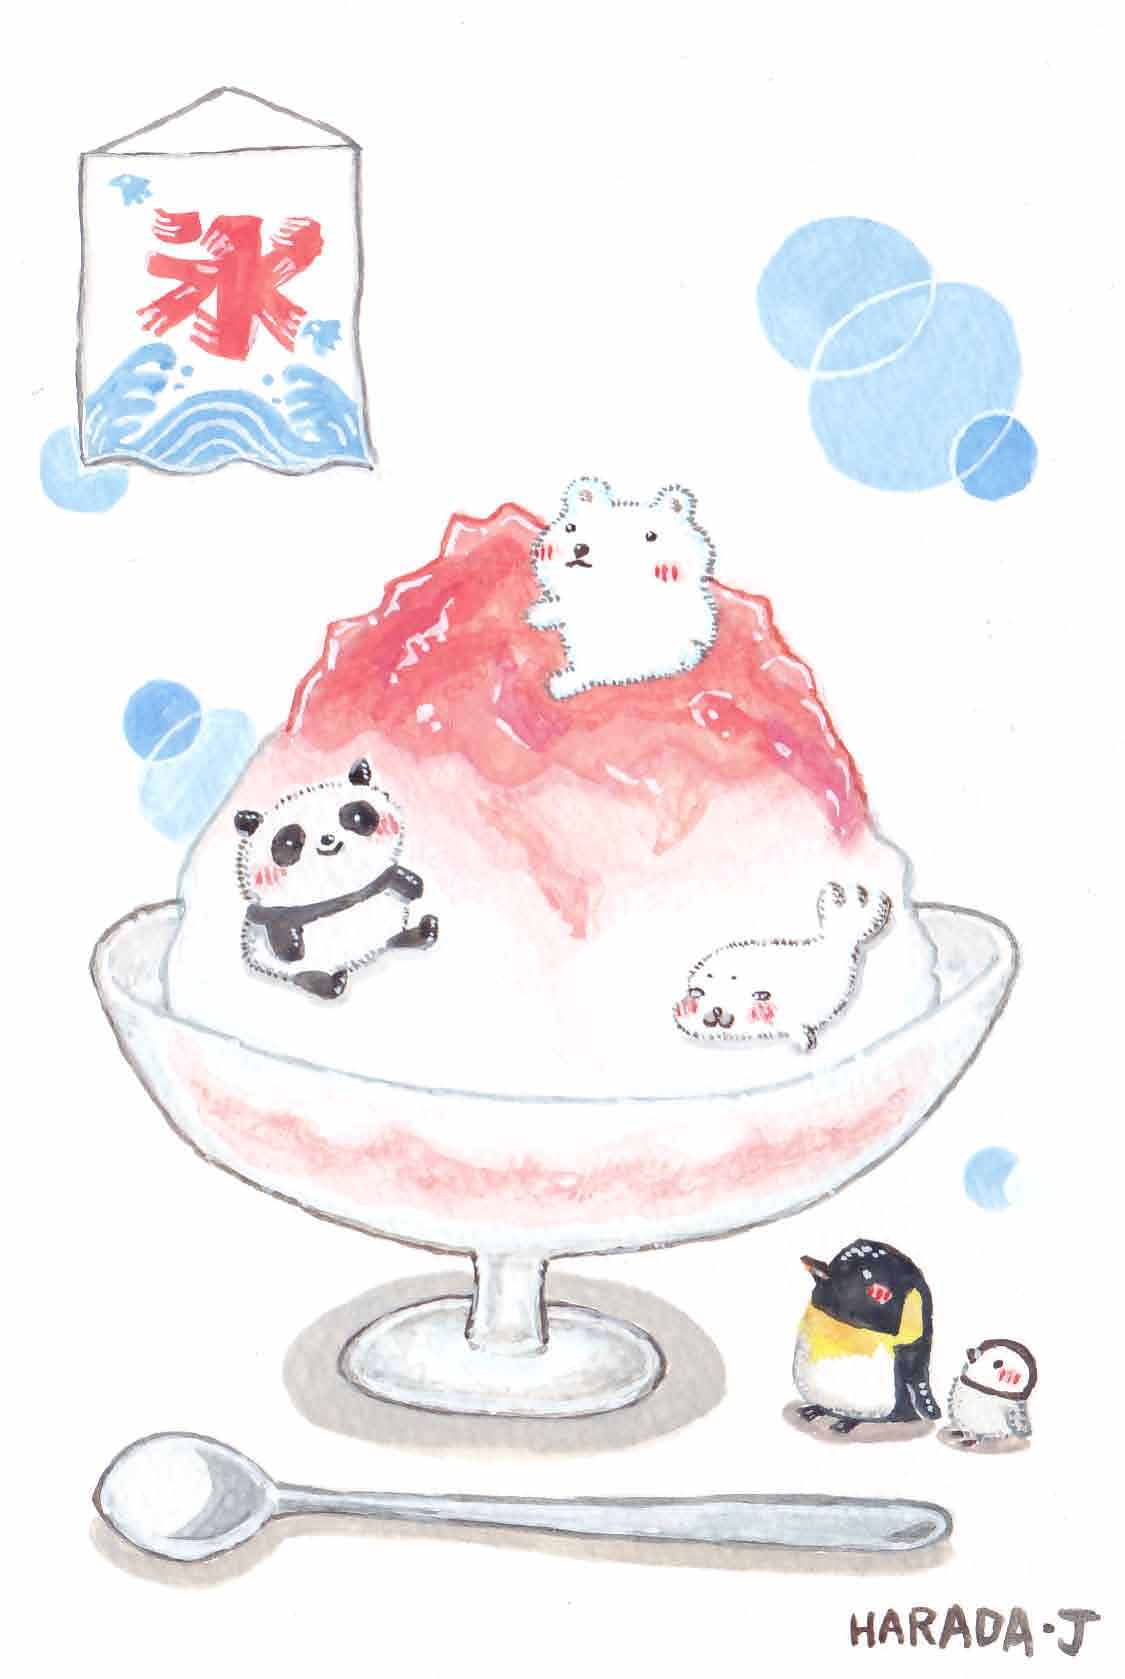 Harada J En Twitter 完成しました イラスト かき氷の中にすむパンダとシロクマとアザラシを見上げるペンギンの親子 です ご覧ください O 丿 T Co K5hsy9cg35 Twitter